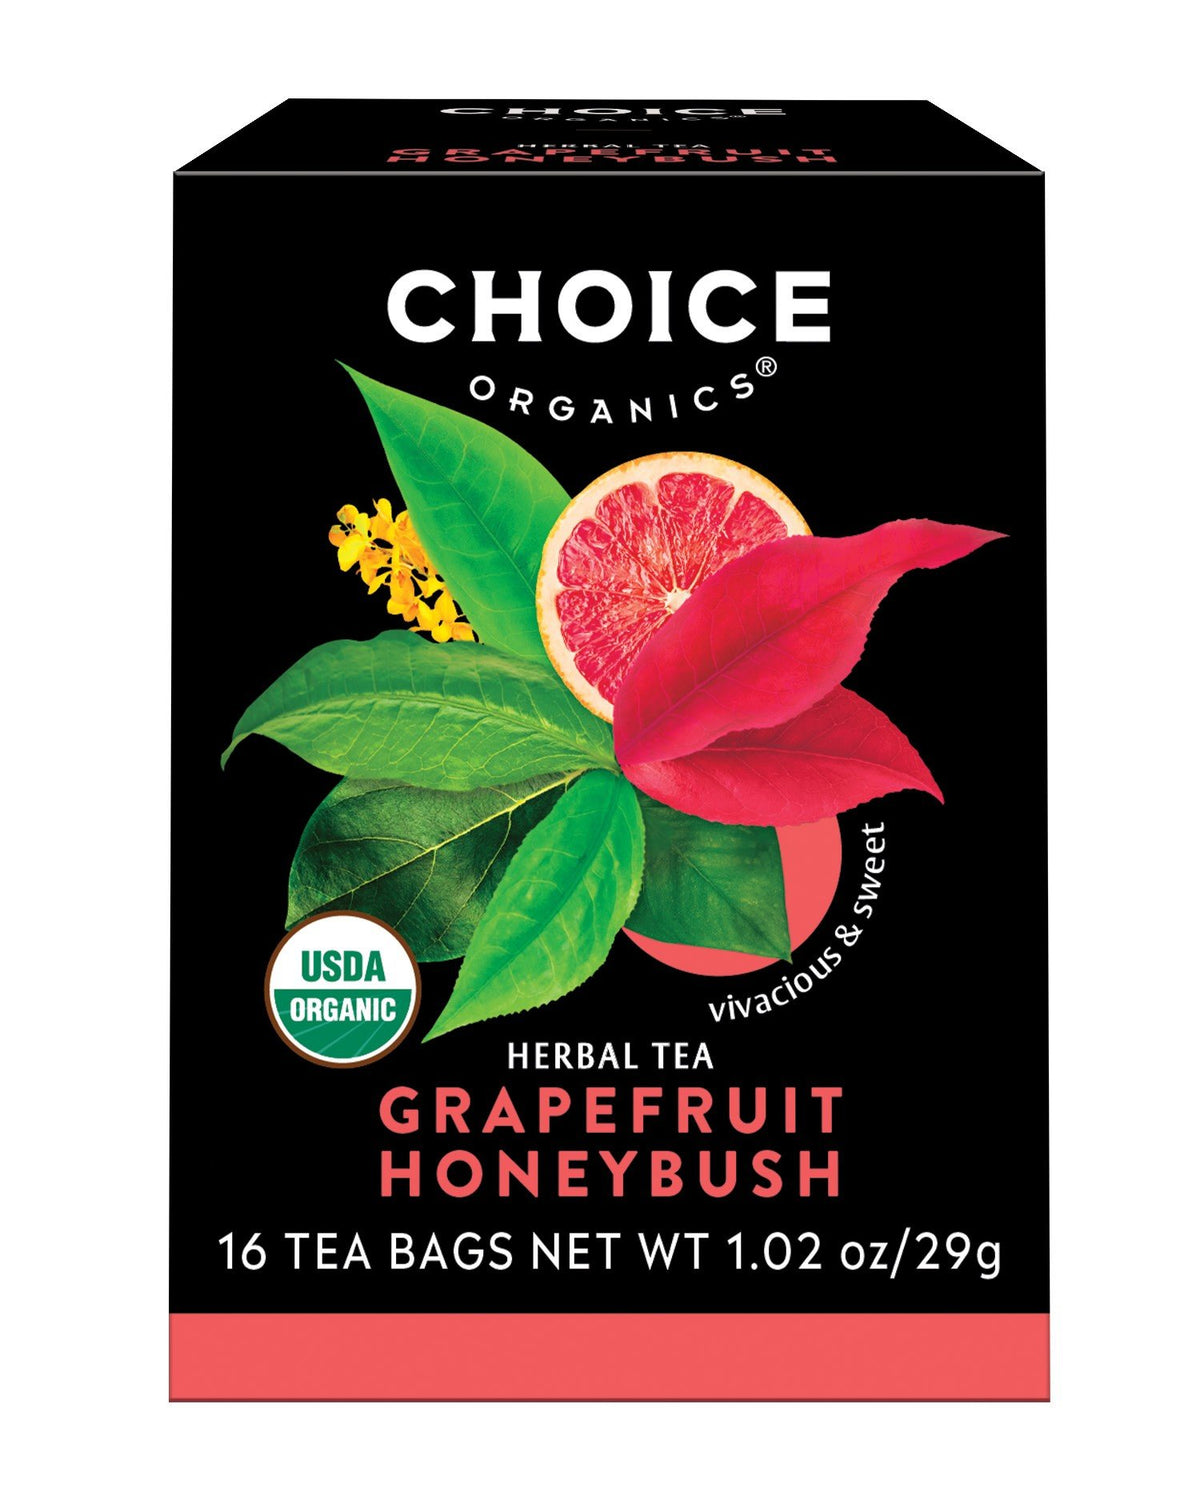 Choice Organics Grapefruit Honeybush Tea 16 Bags Box